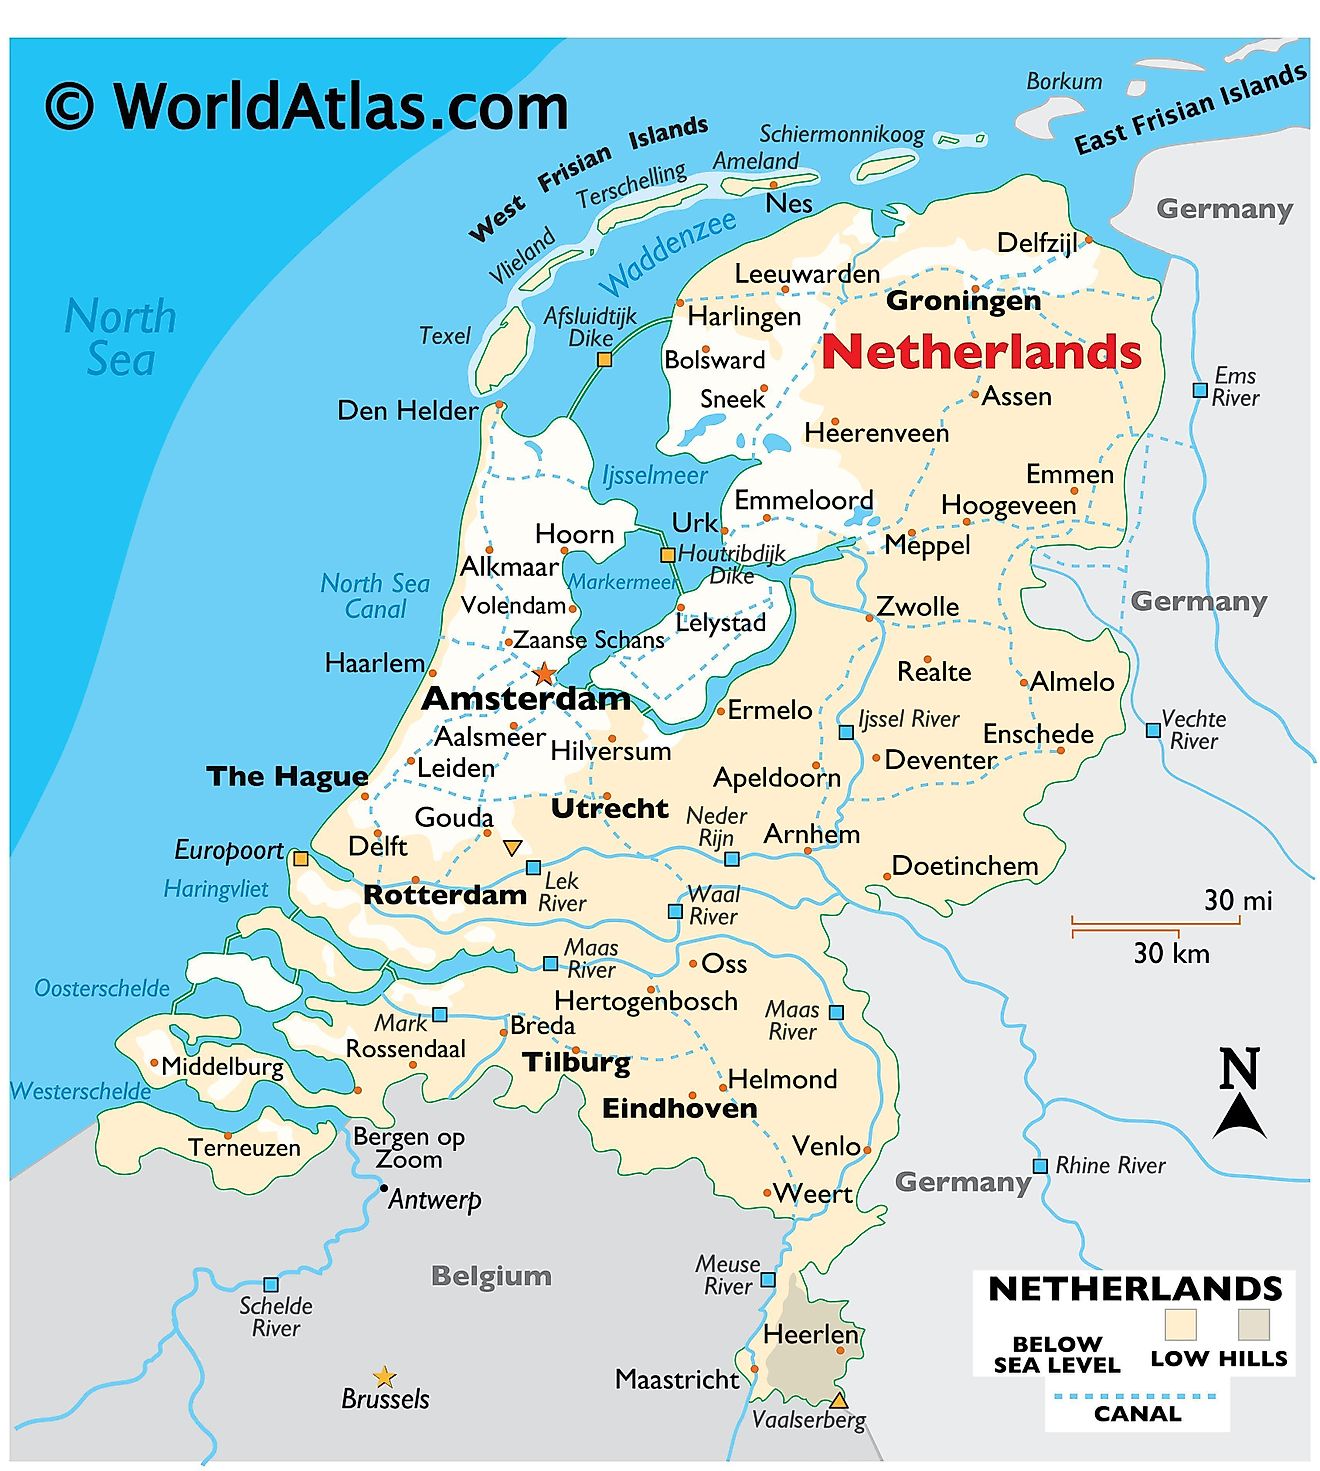 Carte physique des Pays-Bas montrant le relief, les frontières internationales, les principaux cours d'eau, les points extrêmes, les villes importantes, les îles, etc.